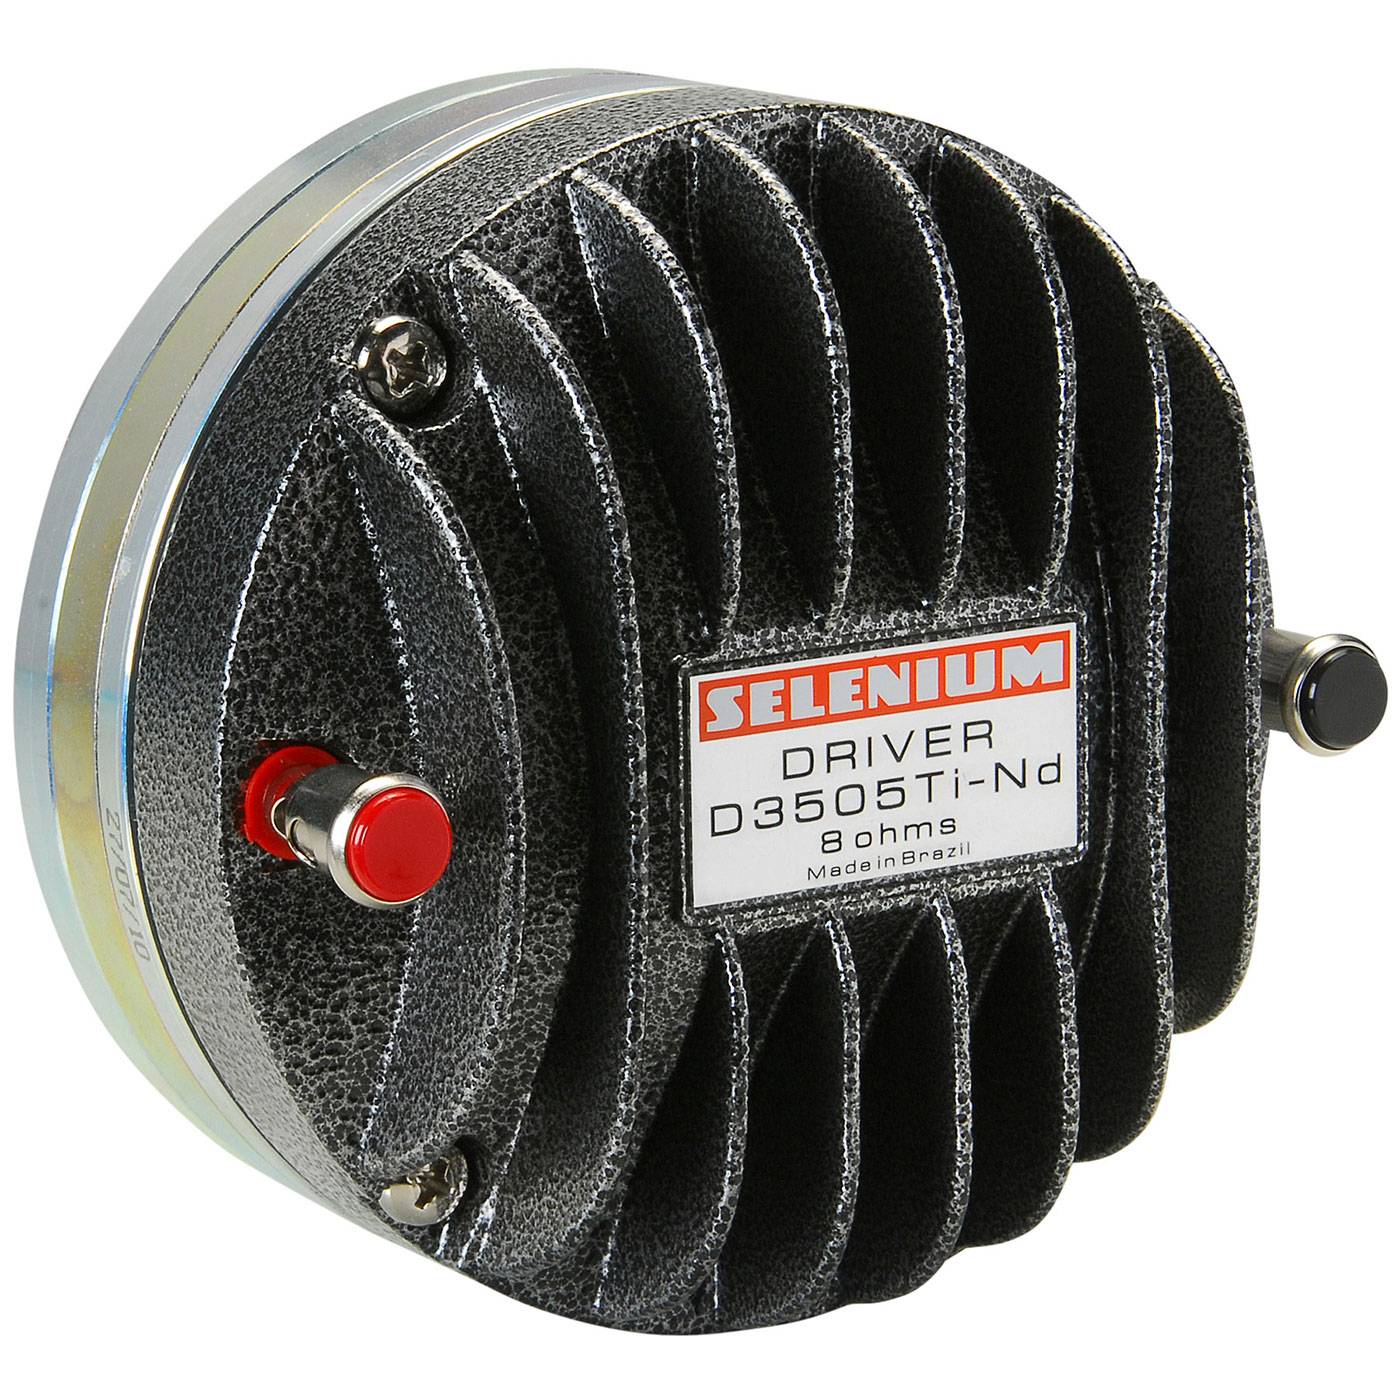 SELENIUM D-3505TI-ND Horn Speaker